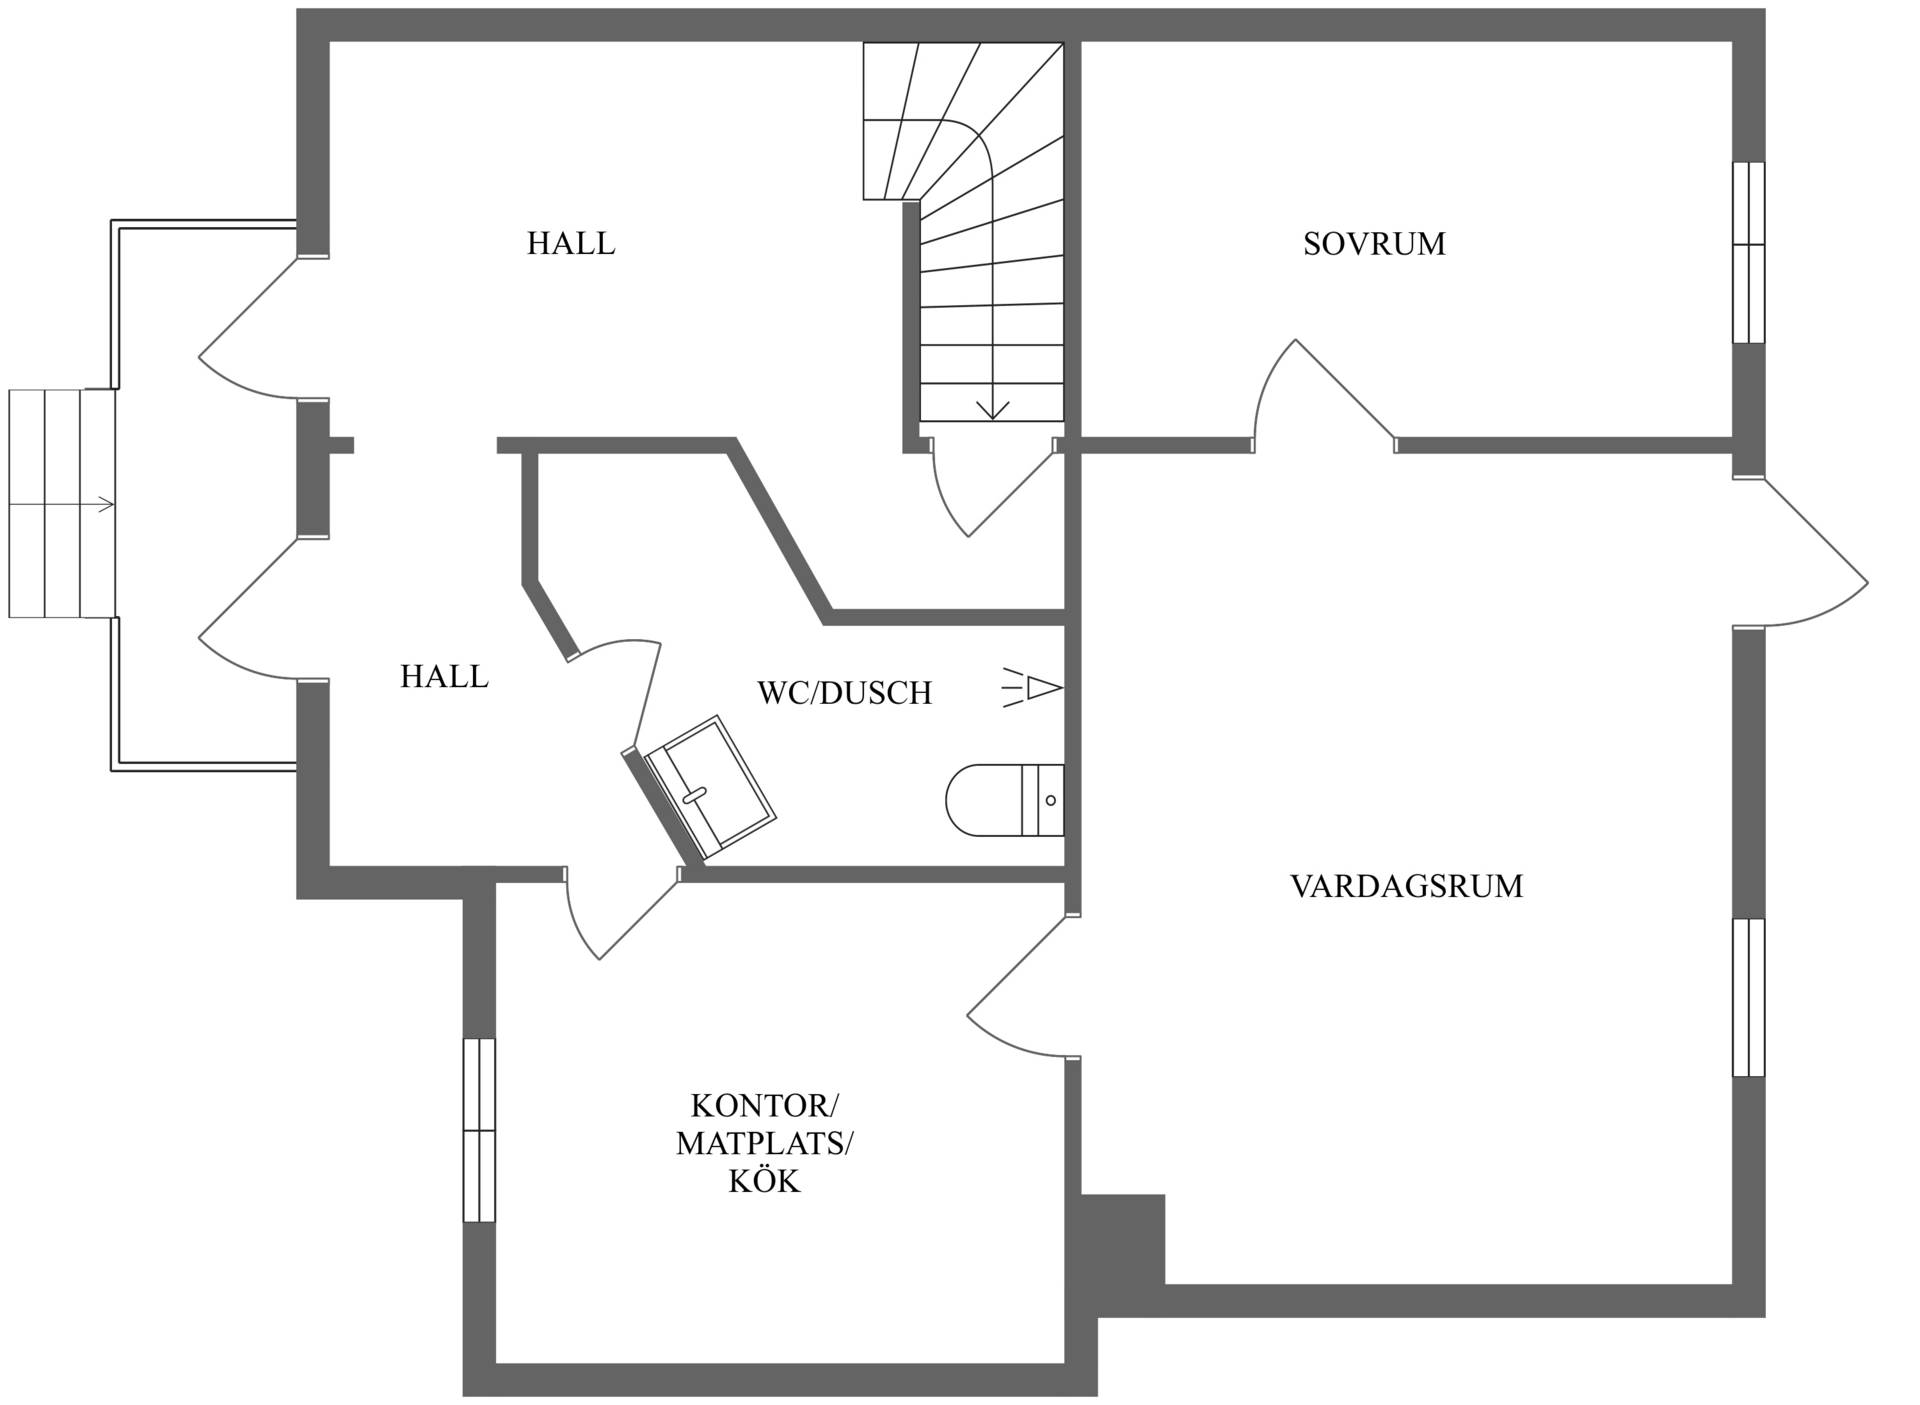 Lägenhet 2rok entréplan mitten. Trapphus med trappa upp till övre plan samt ner till källarplan.